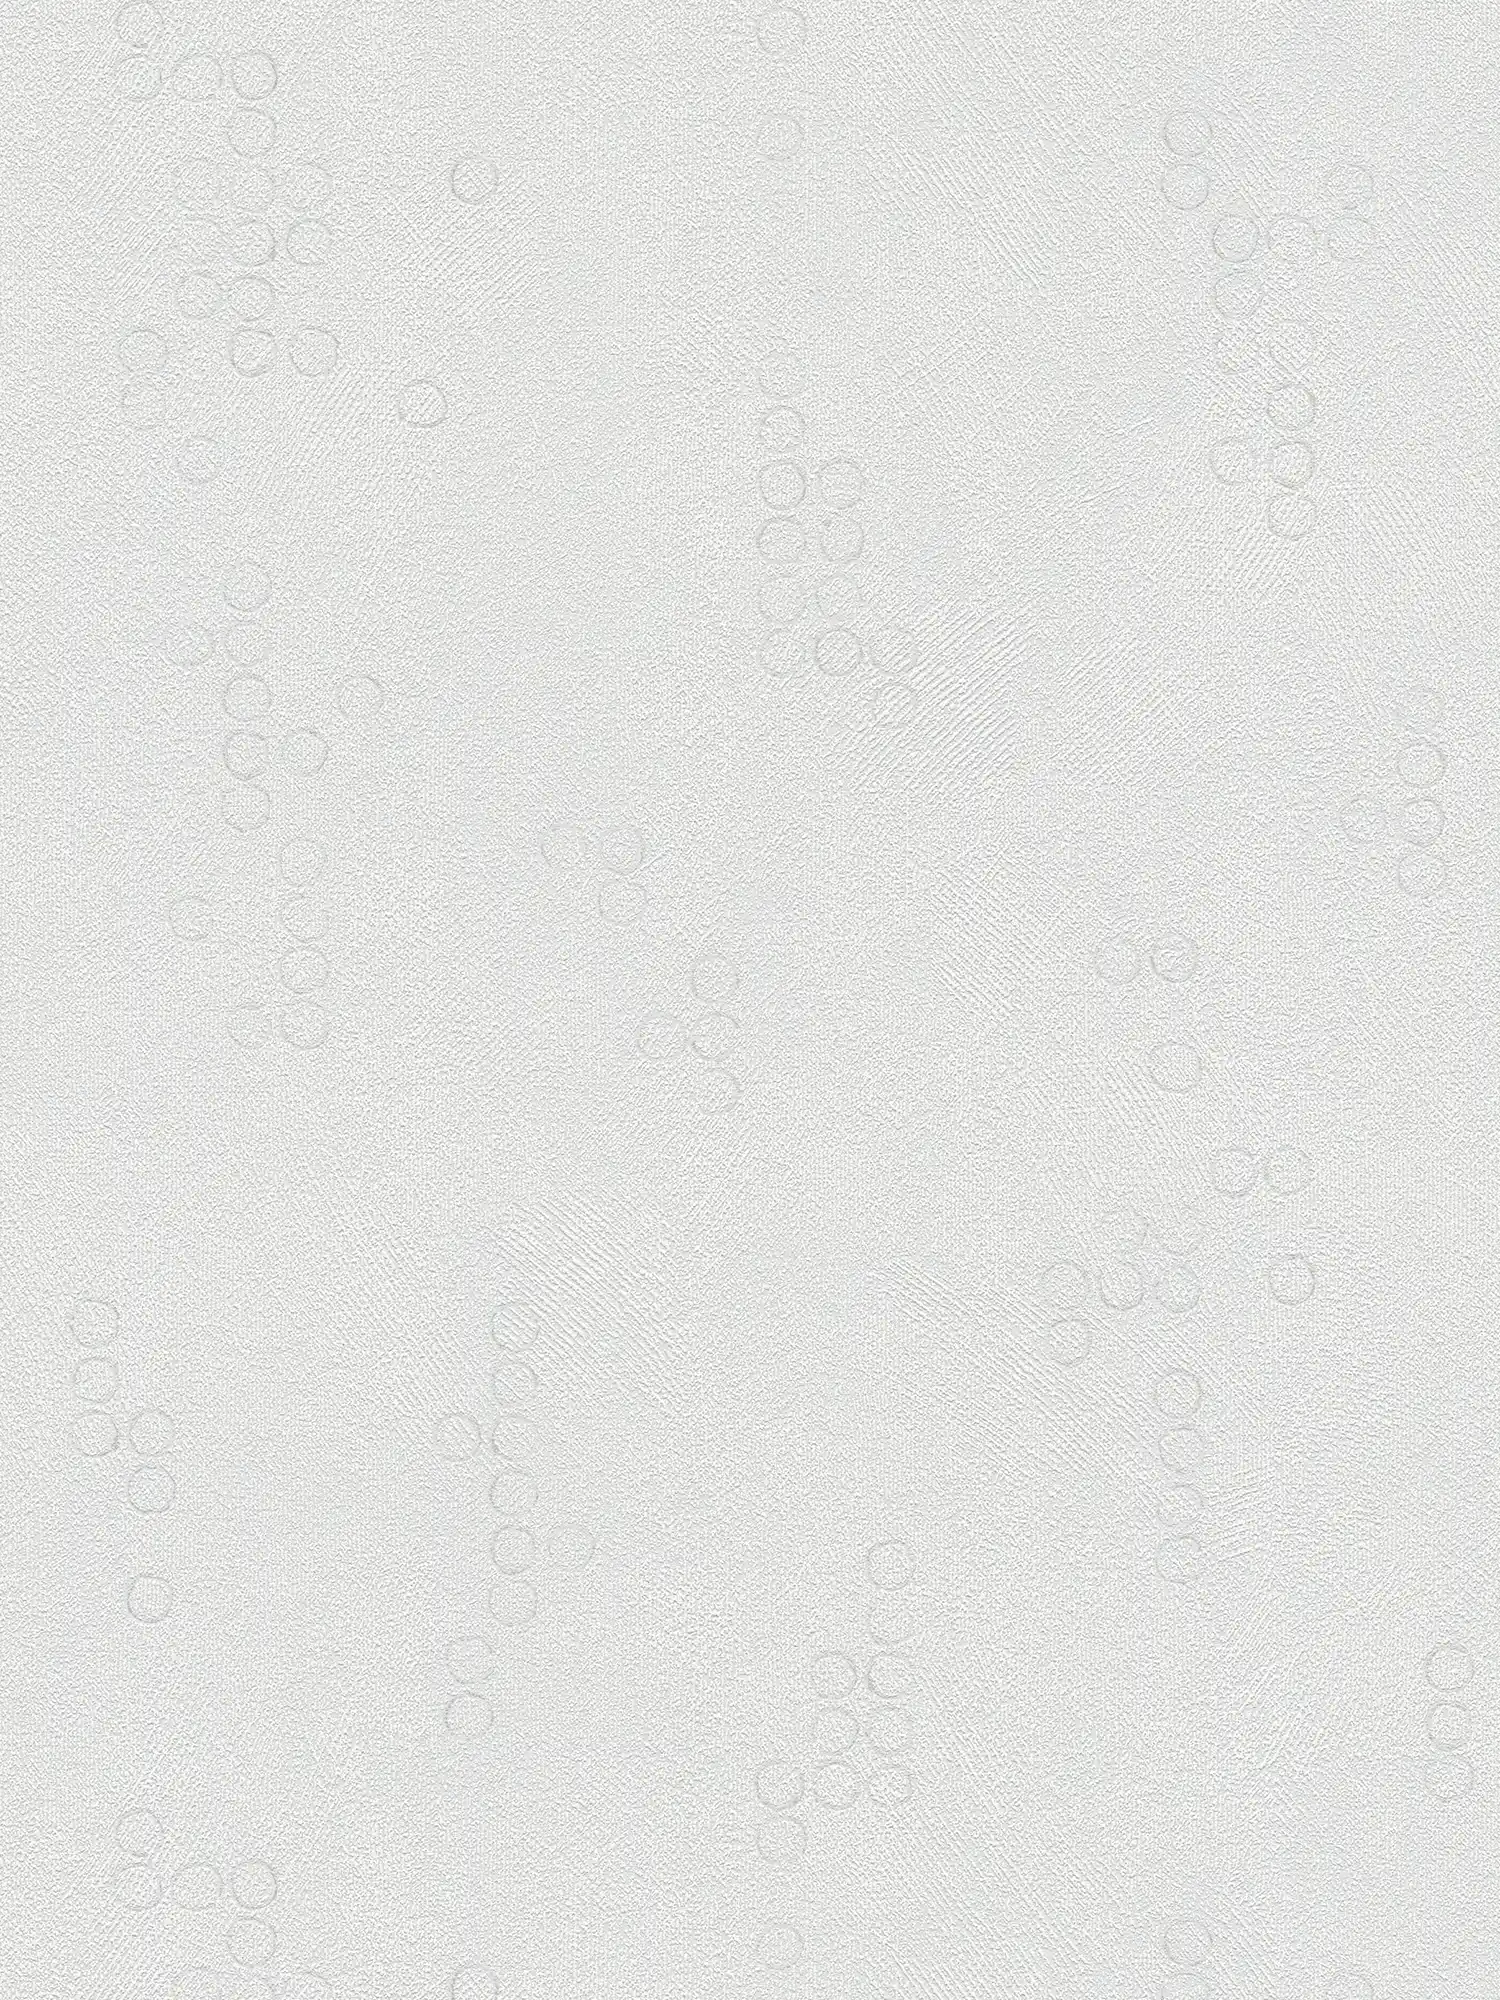 Gipsvezelbehang mediterraan met cirkelpatroon - grijs
